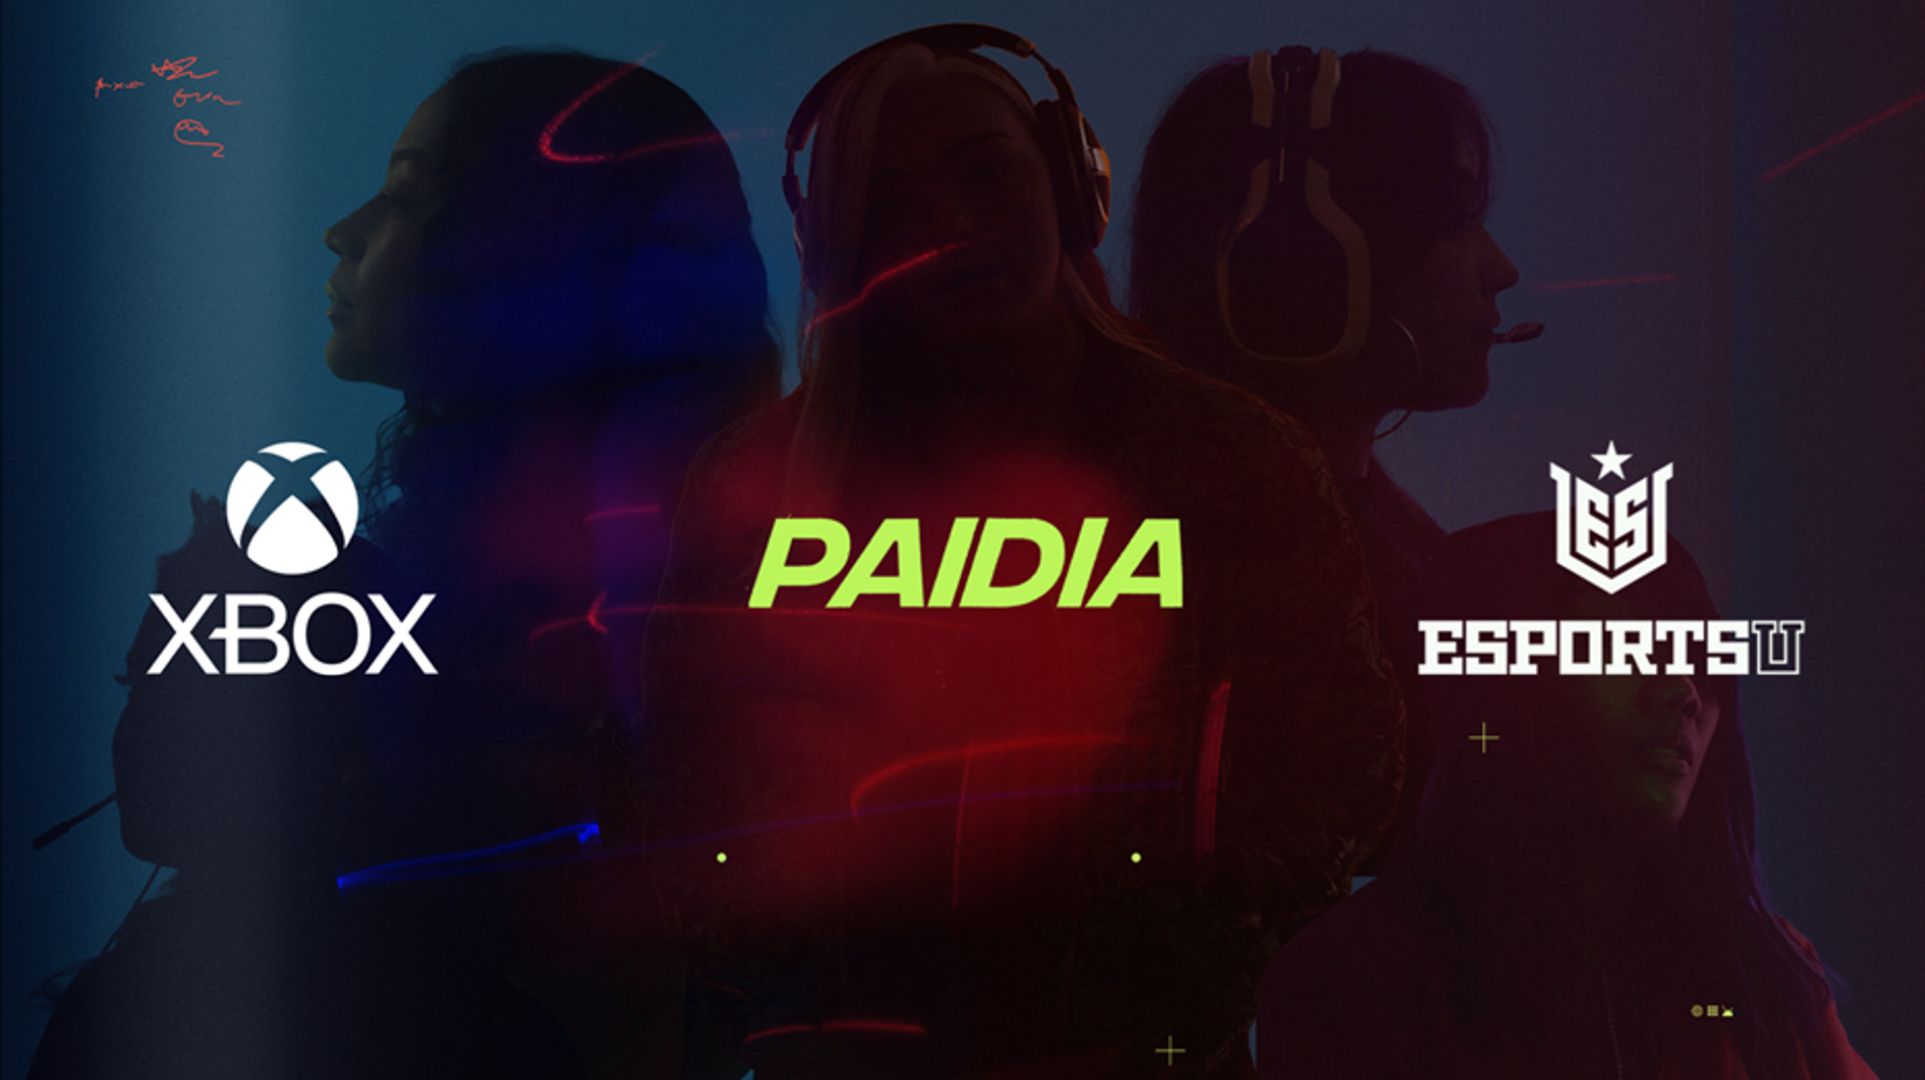 Xbox, Paidia och EsportsU logotyper över bild av fem kvinnliga spelare som betecknar partnerskap för att stärka och förstärka möjligheter för kvinnor inom spel.